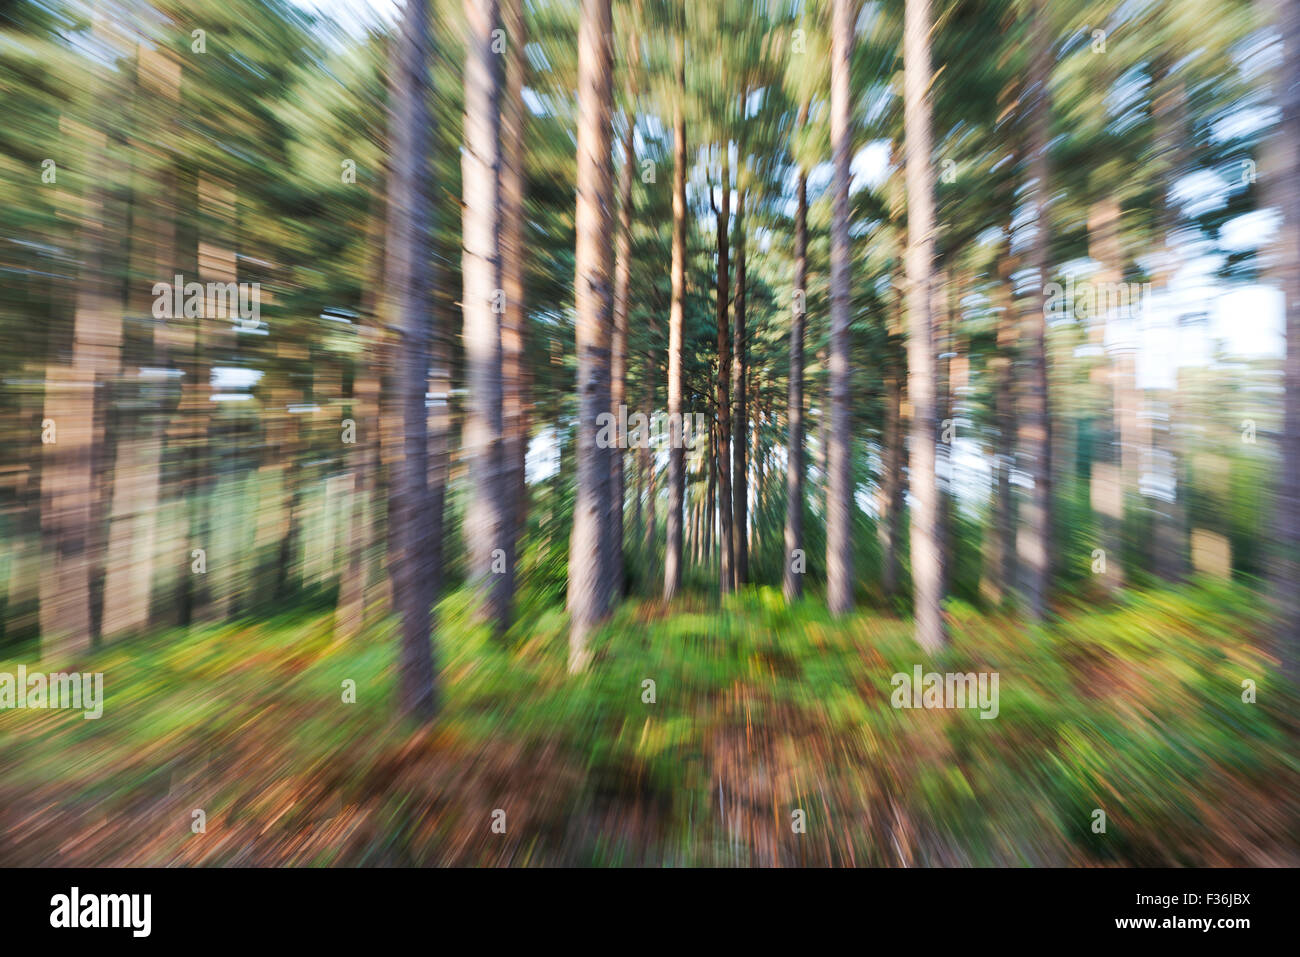 Zoom Effekt Abstract (Objektiv während der Aufnahme gezoomt) in einem Pinienwald Stockfoto